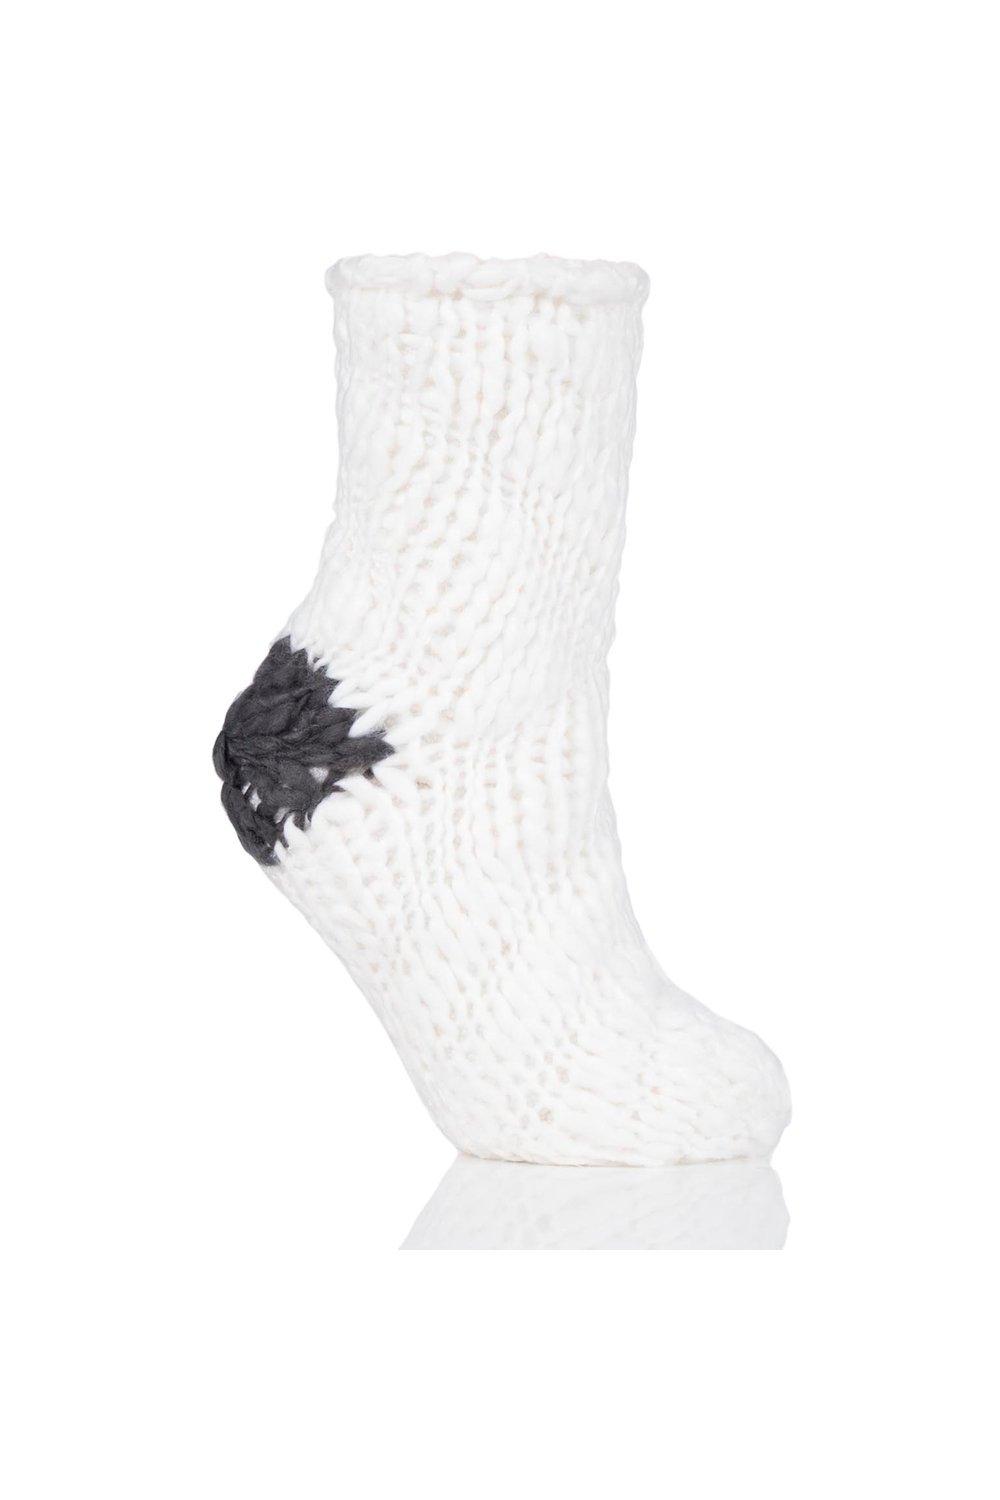 1 Pair Soft Hand Knitted Slipper Socks